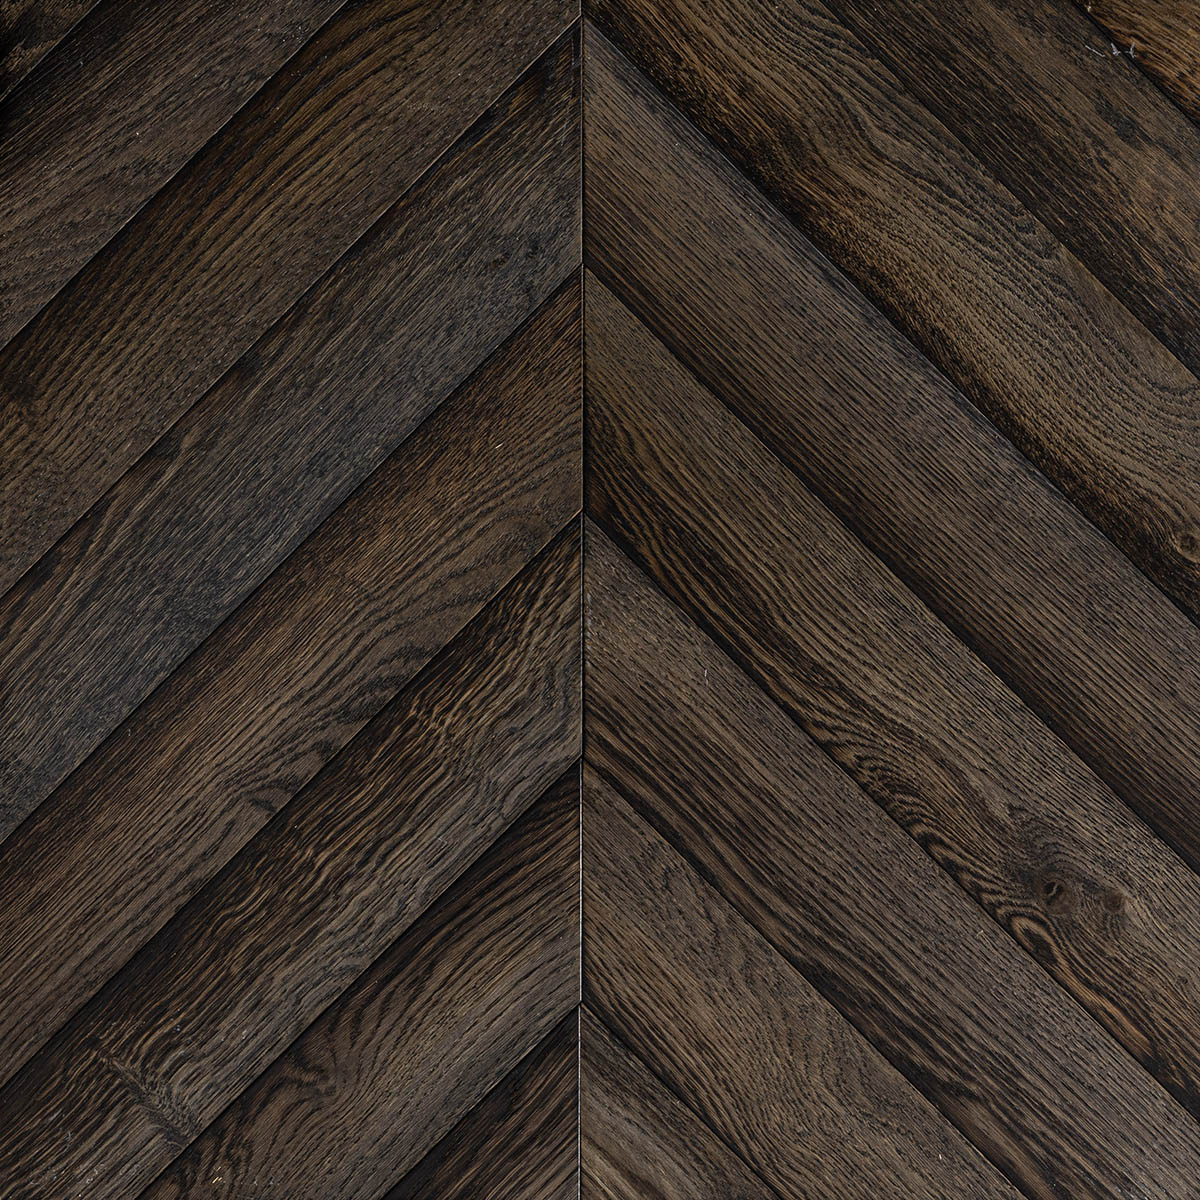 Chevron dark smoked oak engineered wood flooring